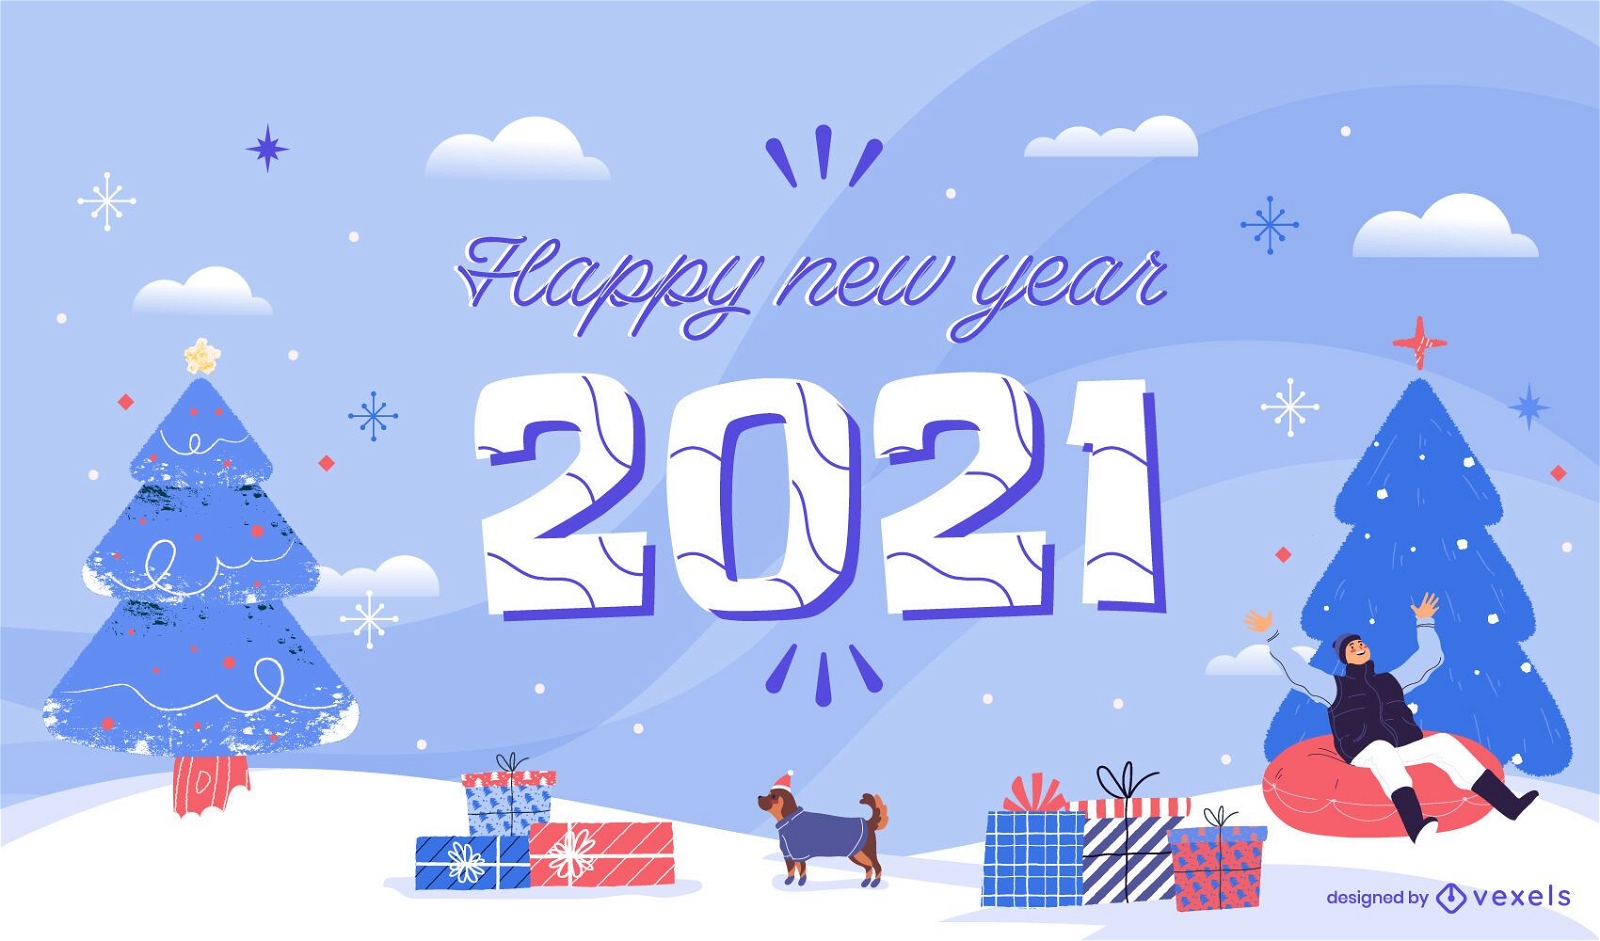 Frohes neues Jahr 2021 Hintergrund